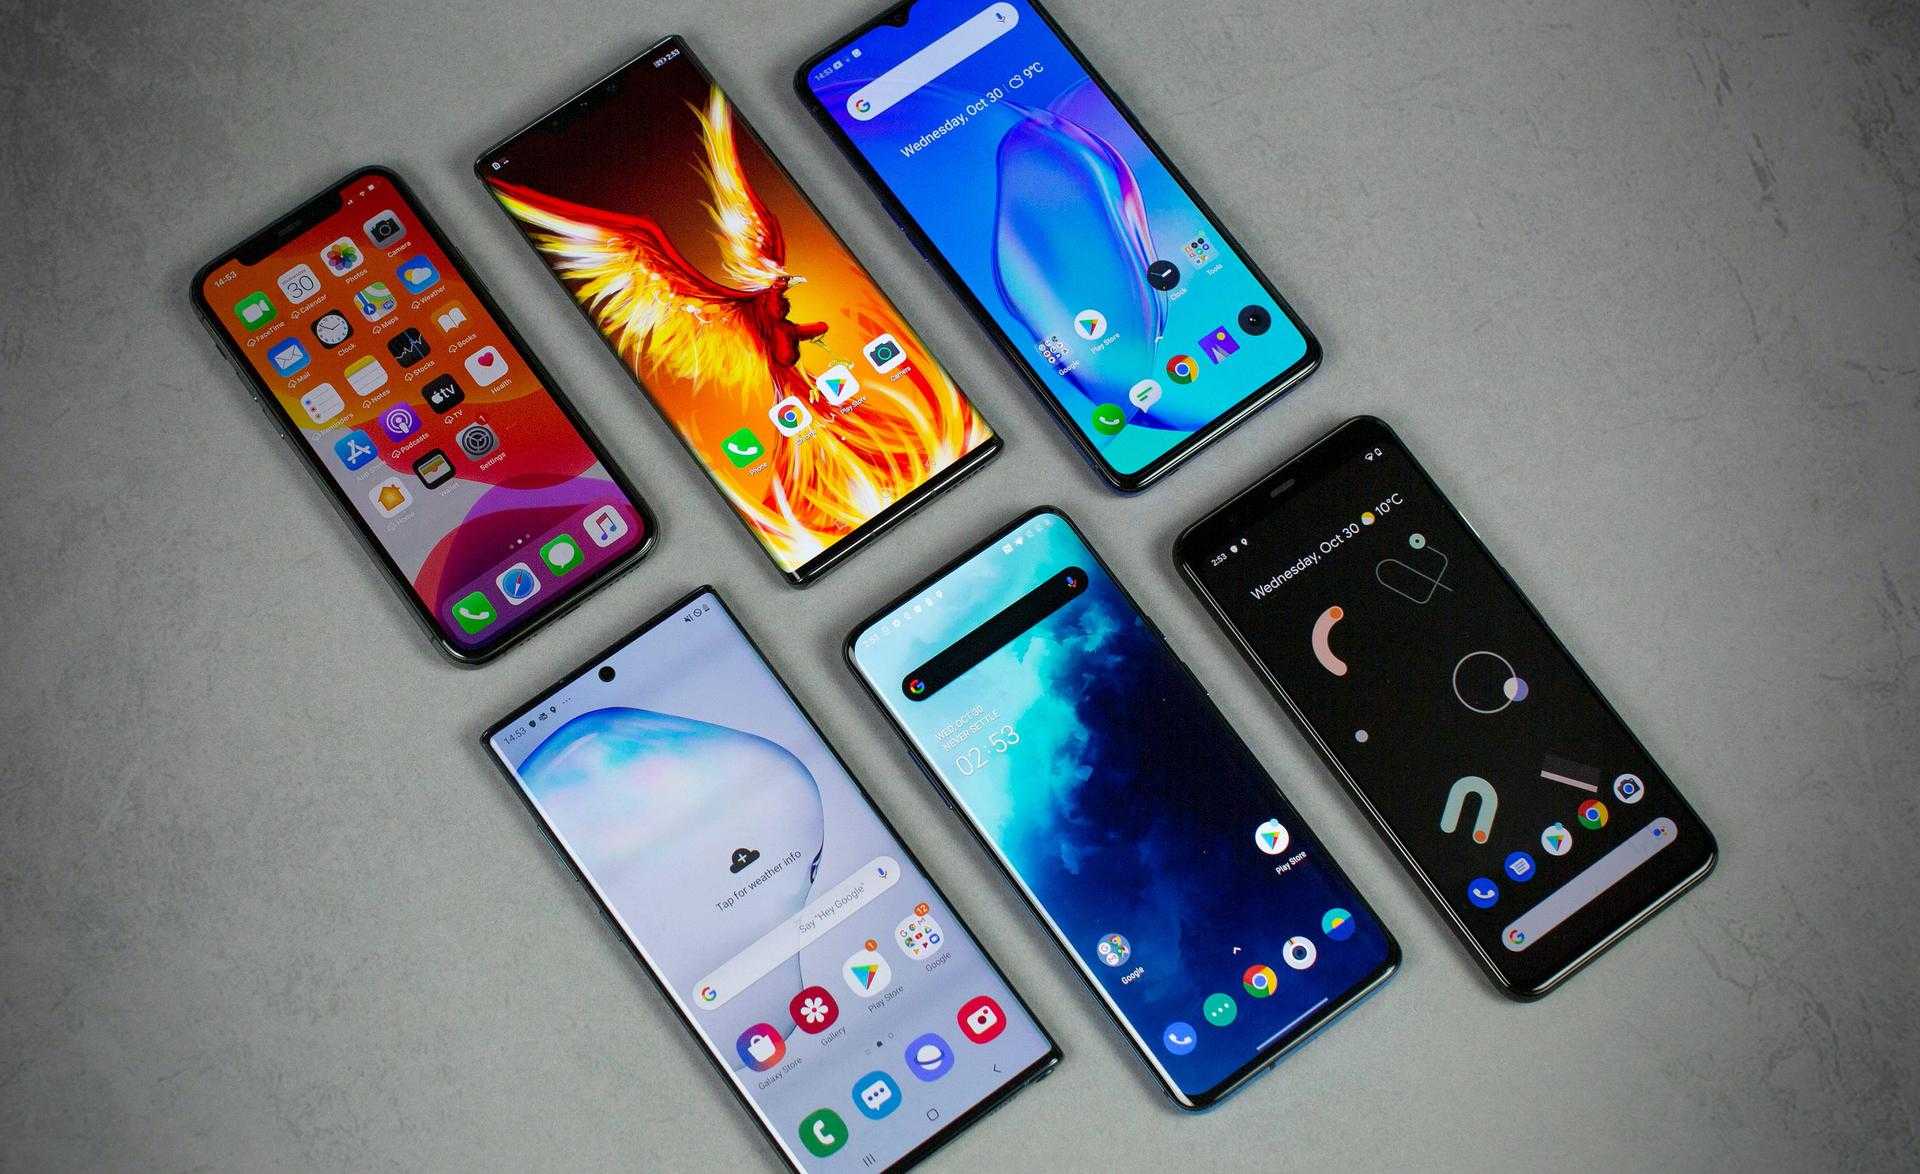 Топ-10 самых популярных смартфонов в России 2022 года, по данным ЯндексМаркет Подборка самых продаваемых в России смартфонов, с описанием, ценами и характеристиками моделей